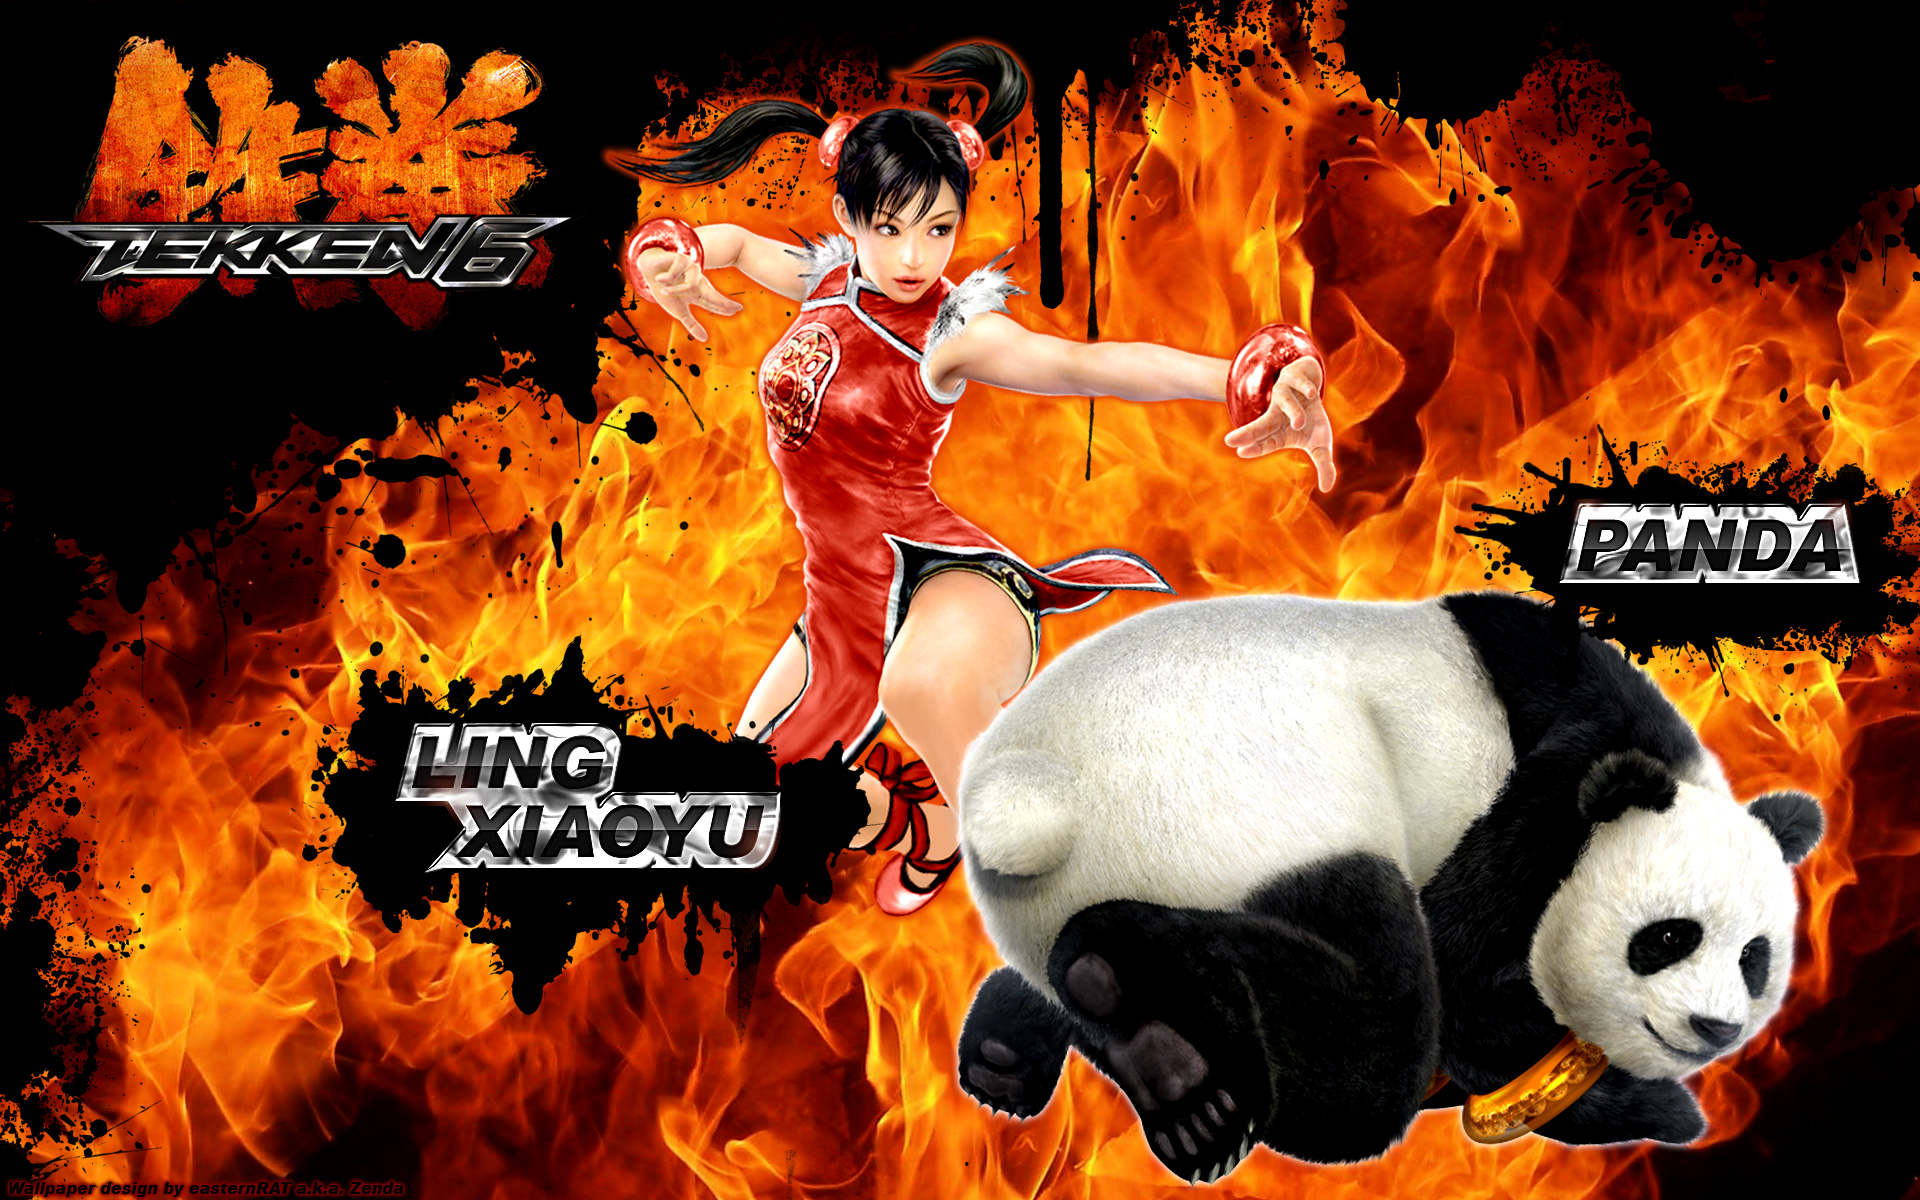 Ling Xiaoyu(<3) & Panda :3